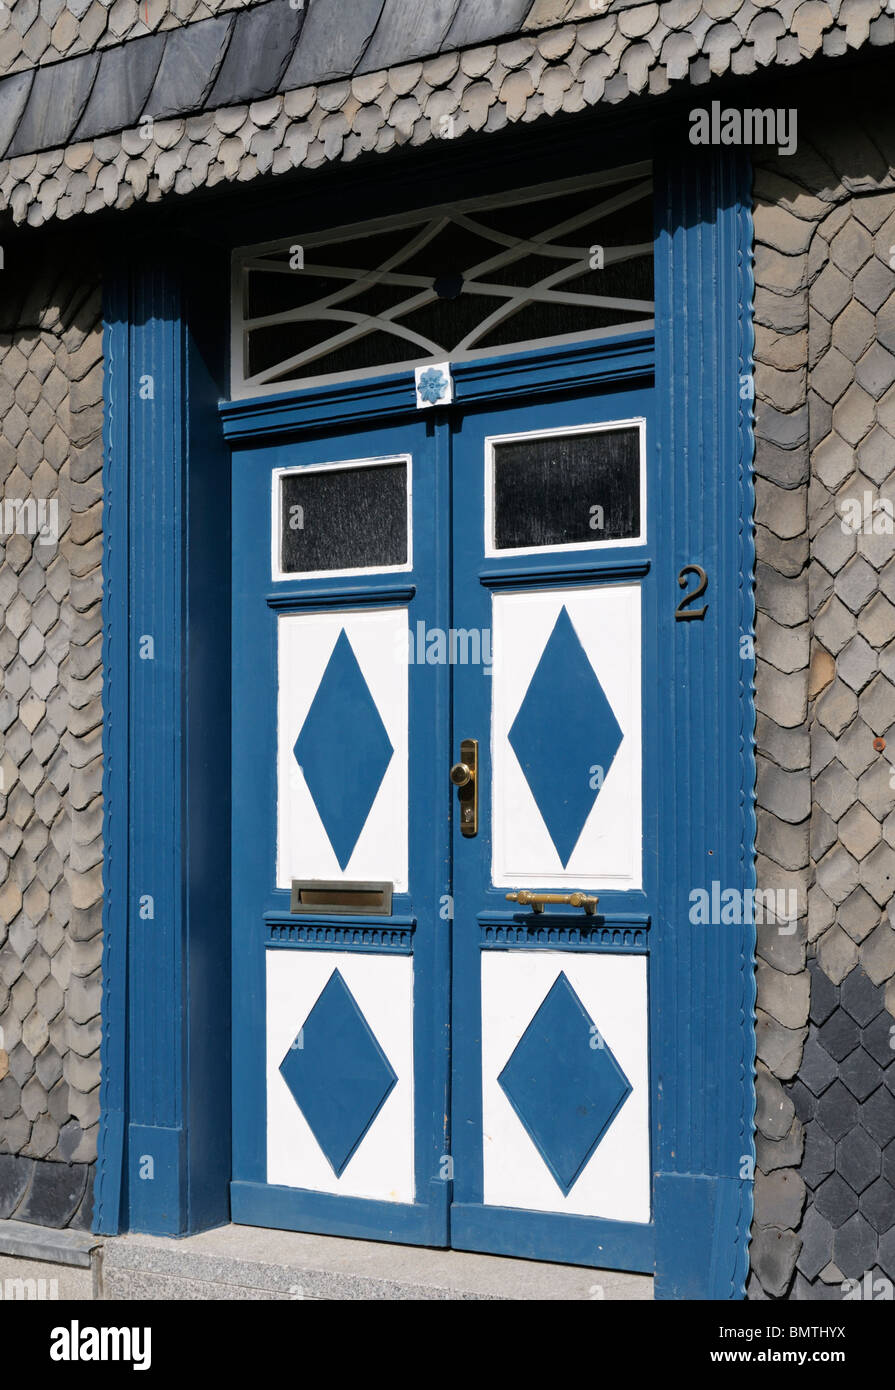 Außentür Blau Weiß Mit Rauten-, Goslar, Deutschland. -Externe Tür blau weiß mit Diamanten, Goslar, Deutschland. Stockfoto